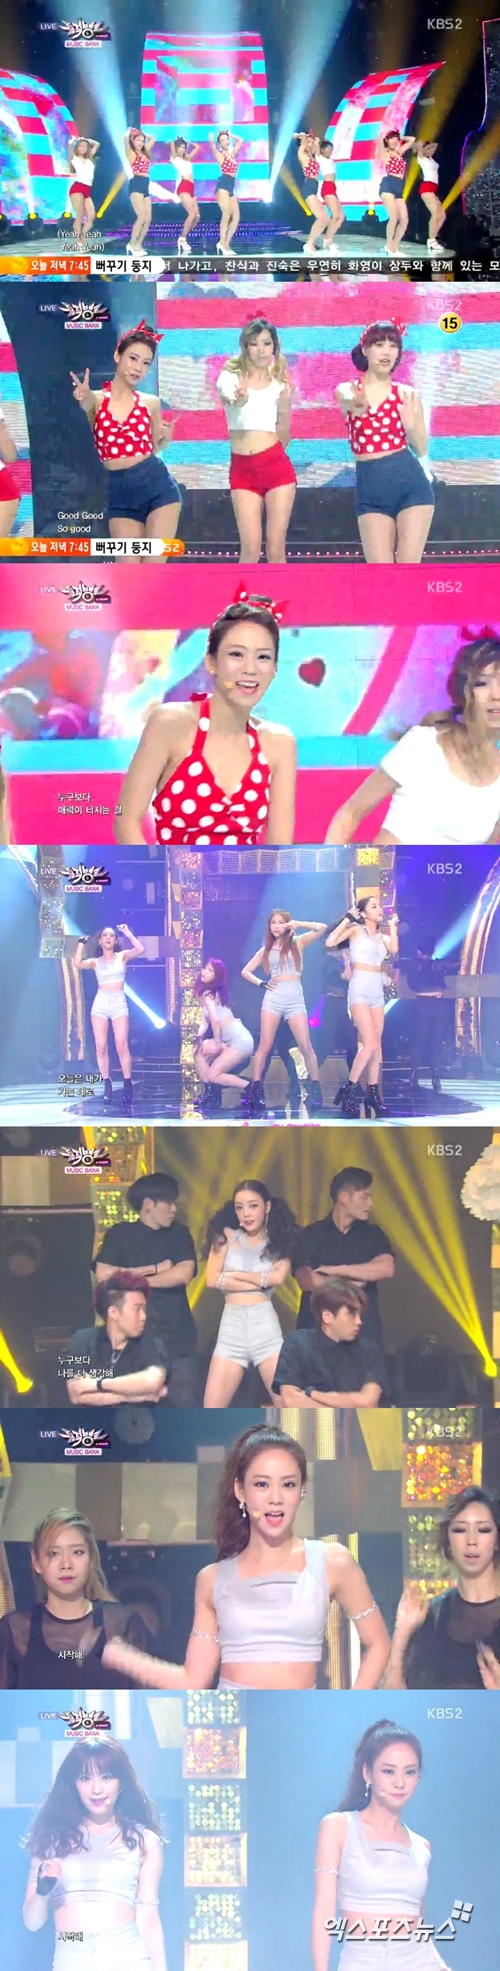 카라가 '뮤직뱅크'에서 스페셜한 컴백 무대를 선보였다. ⓒ KBS 방송화면